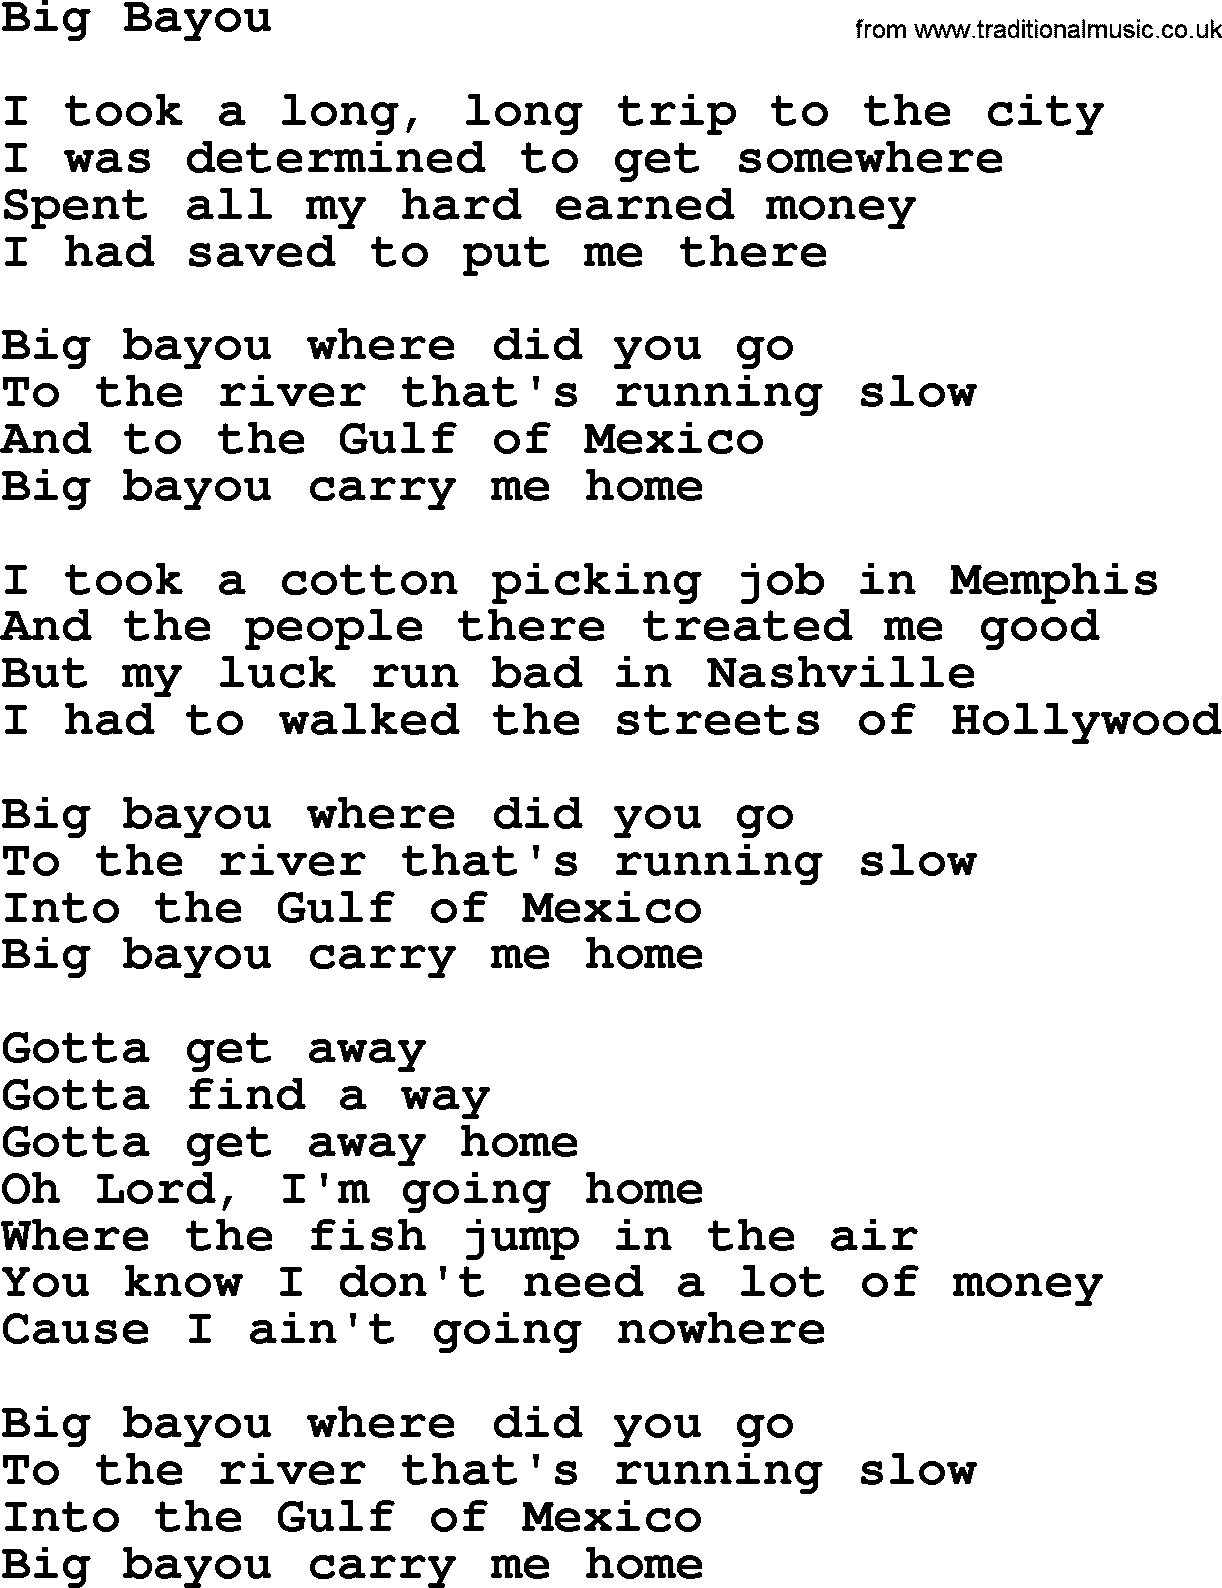 The Byrds song Big Bayou, lyrics